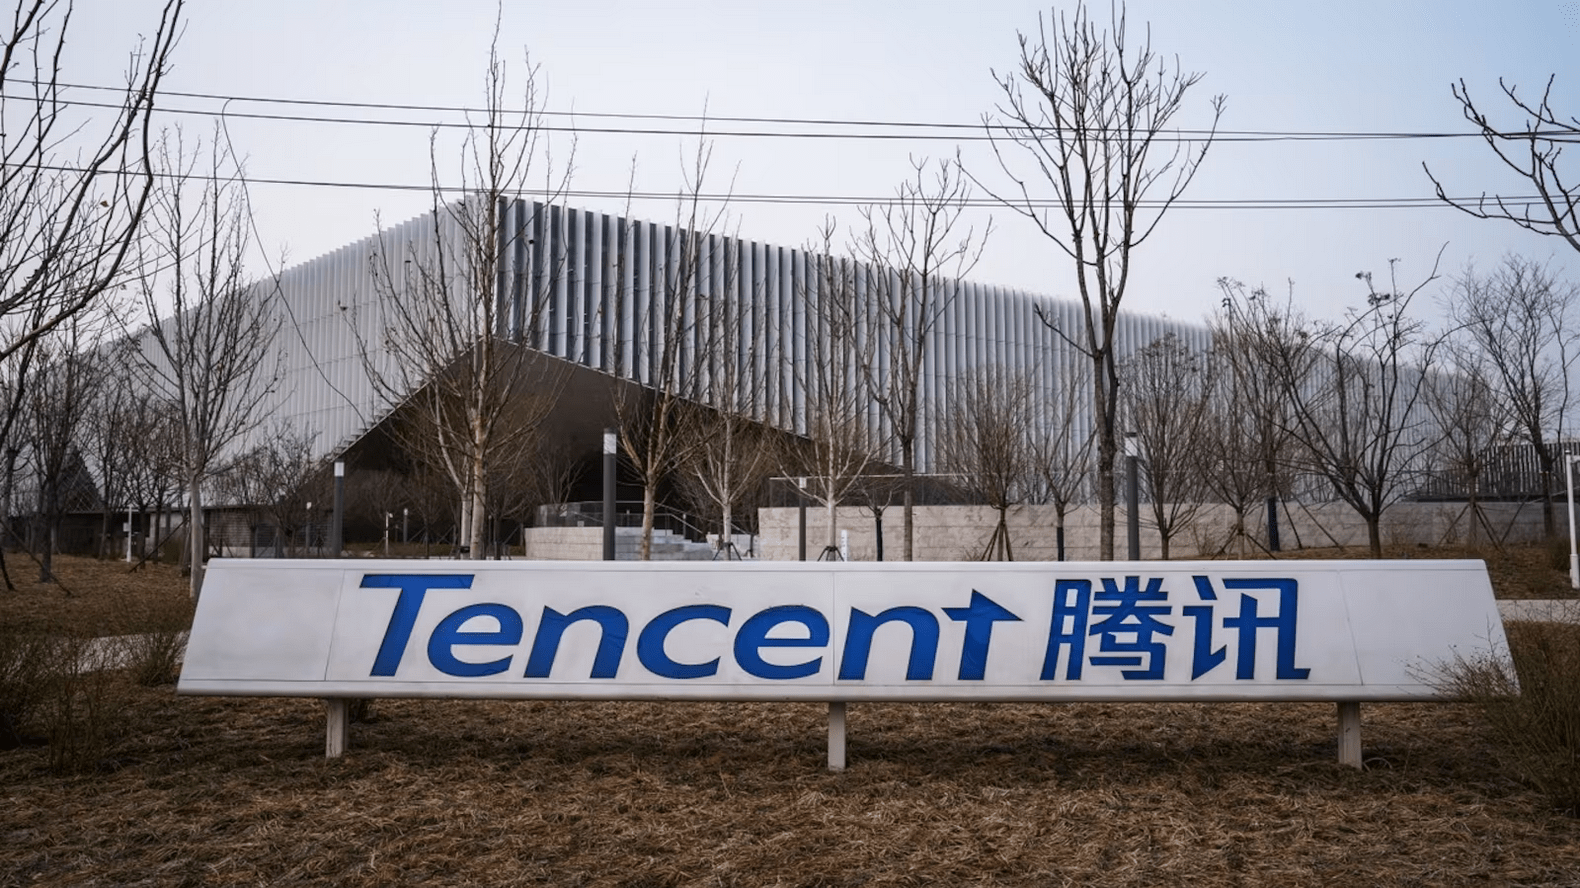 Mối quan hệ giữa Tencent và ByteDance được cải thiện. Ảnh: Moneycontrol.